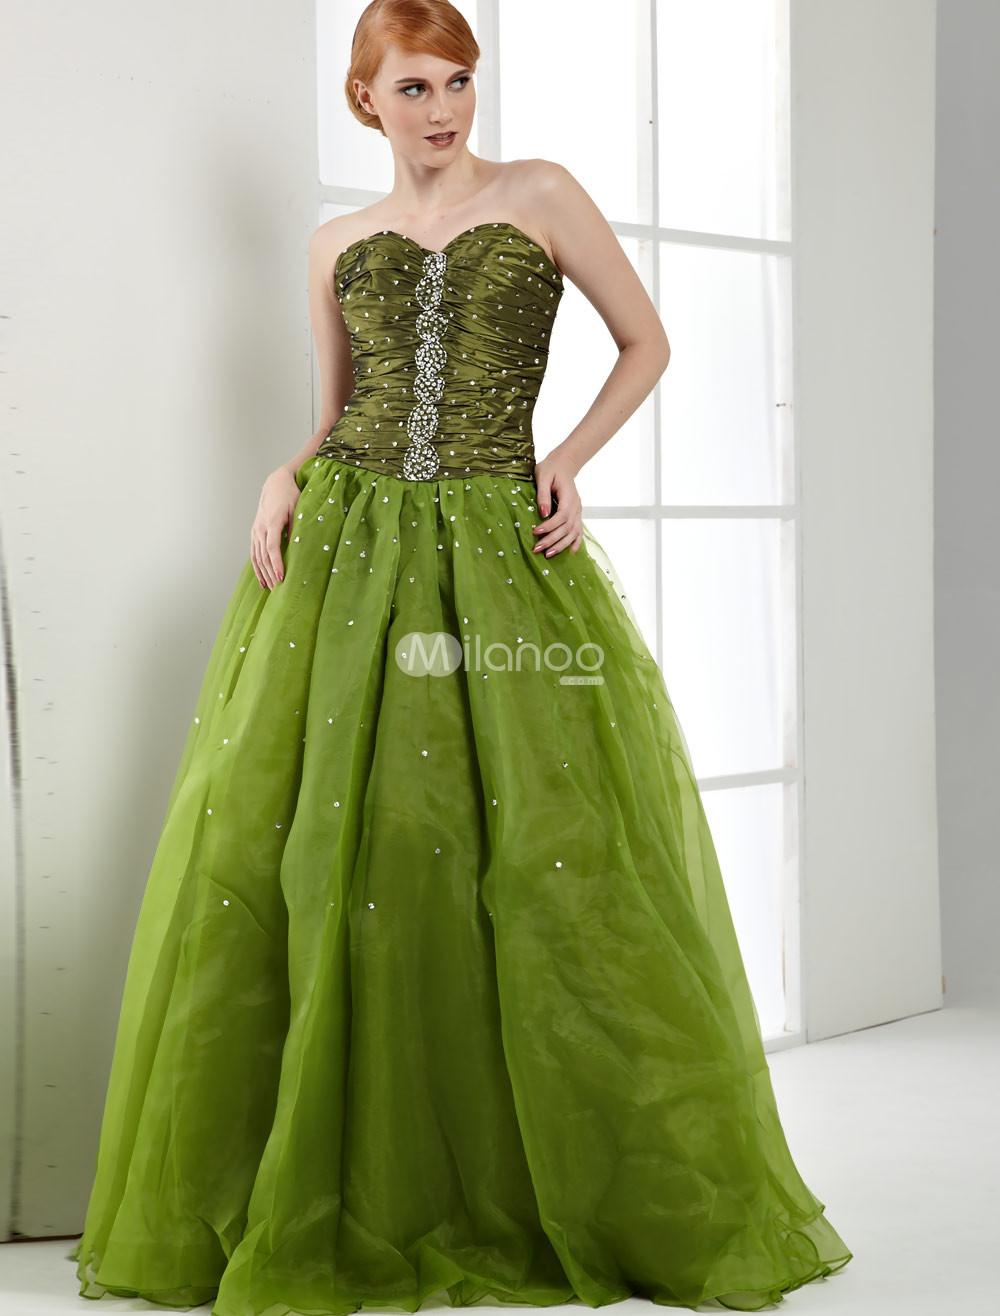 Green Wedding Dress Ideas